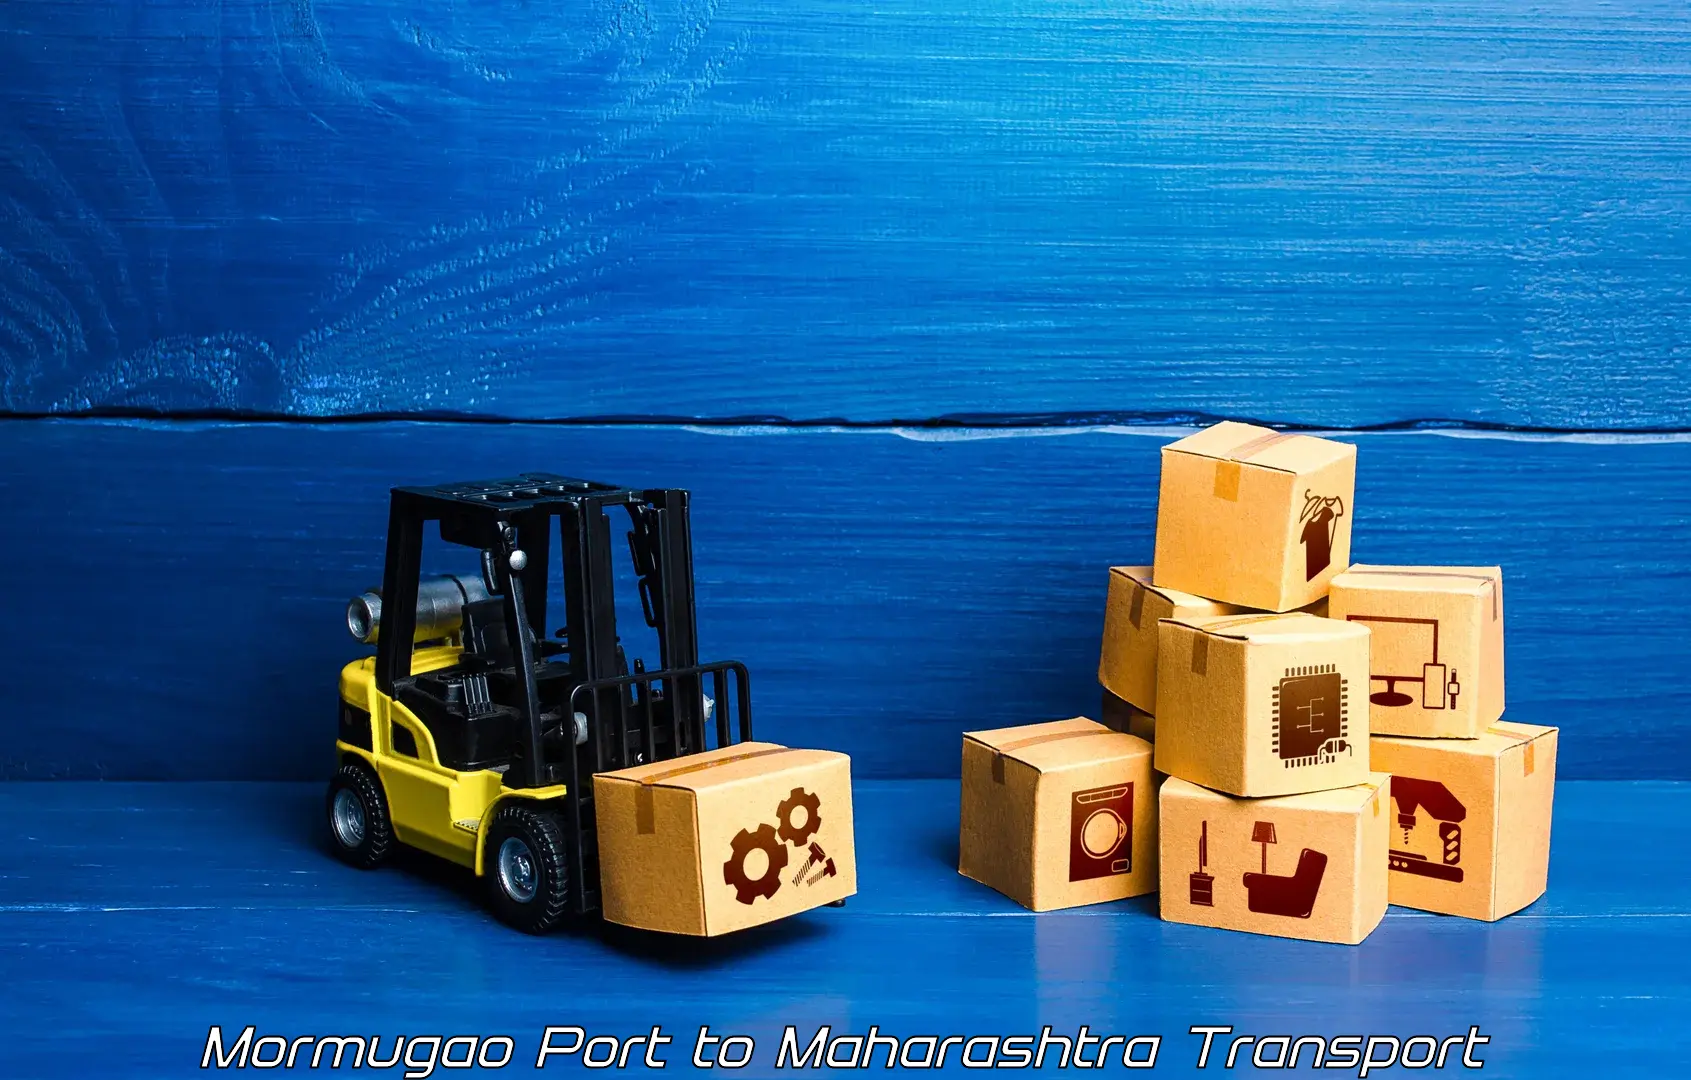 Cargo train transport services Mormugao Port to Vaijapur